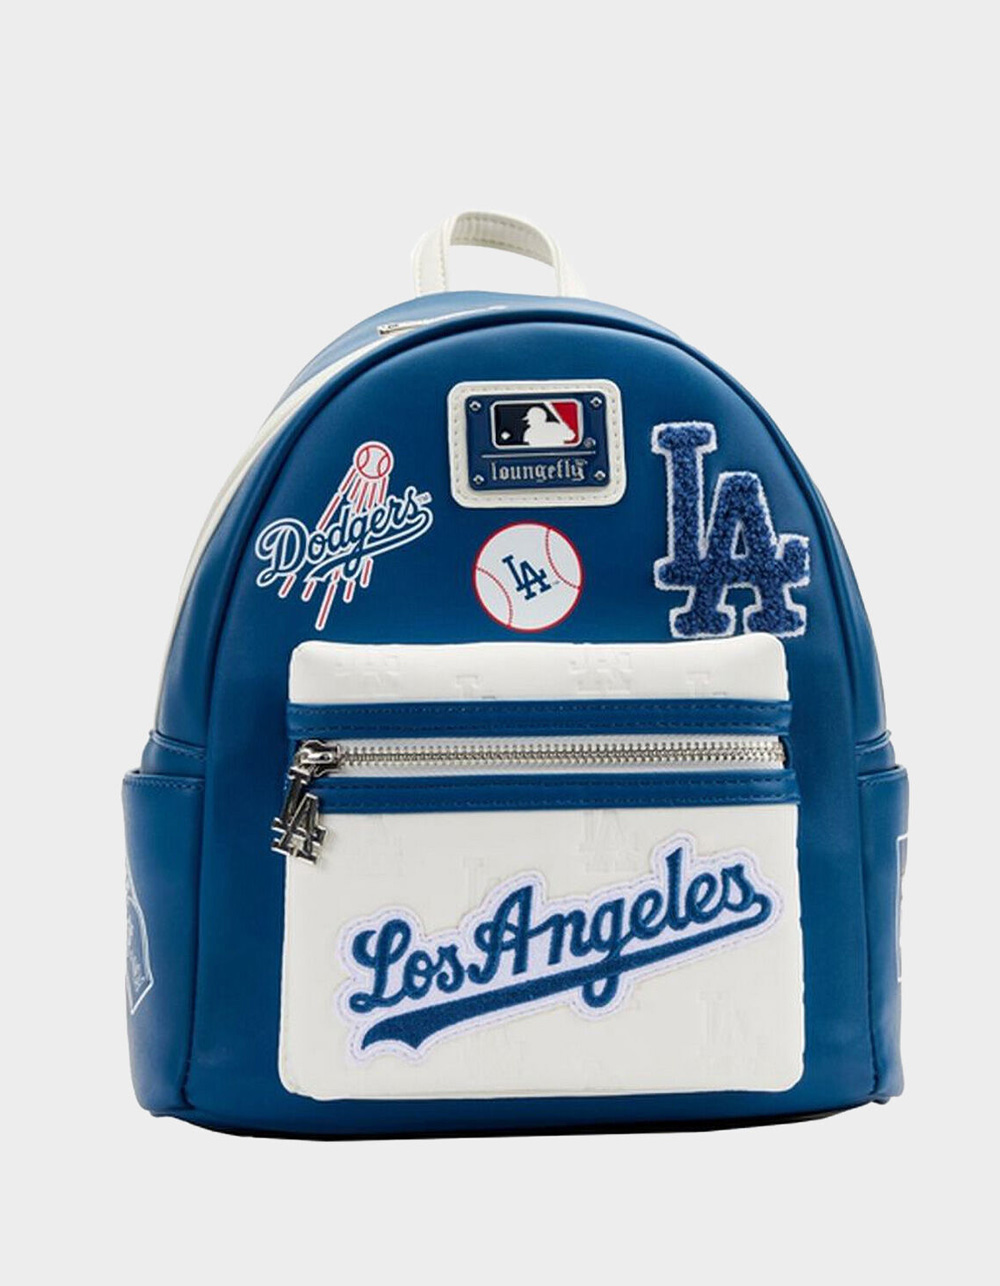 Hello Kitty Los Angeles Dodgers MLB Fan Shop